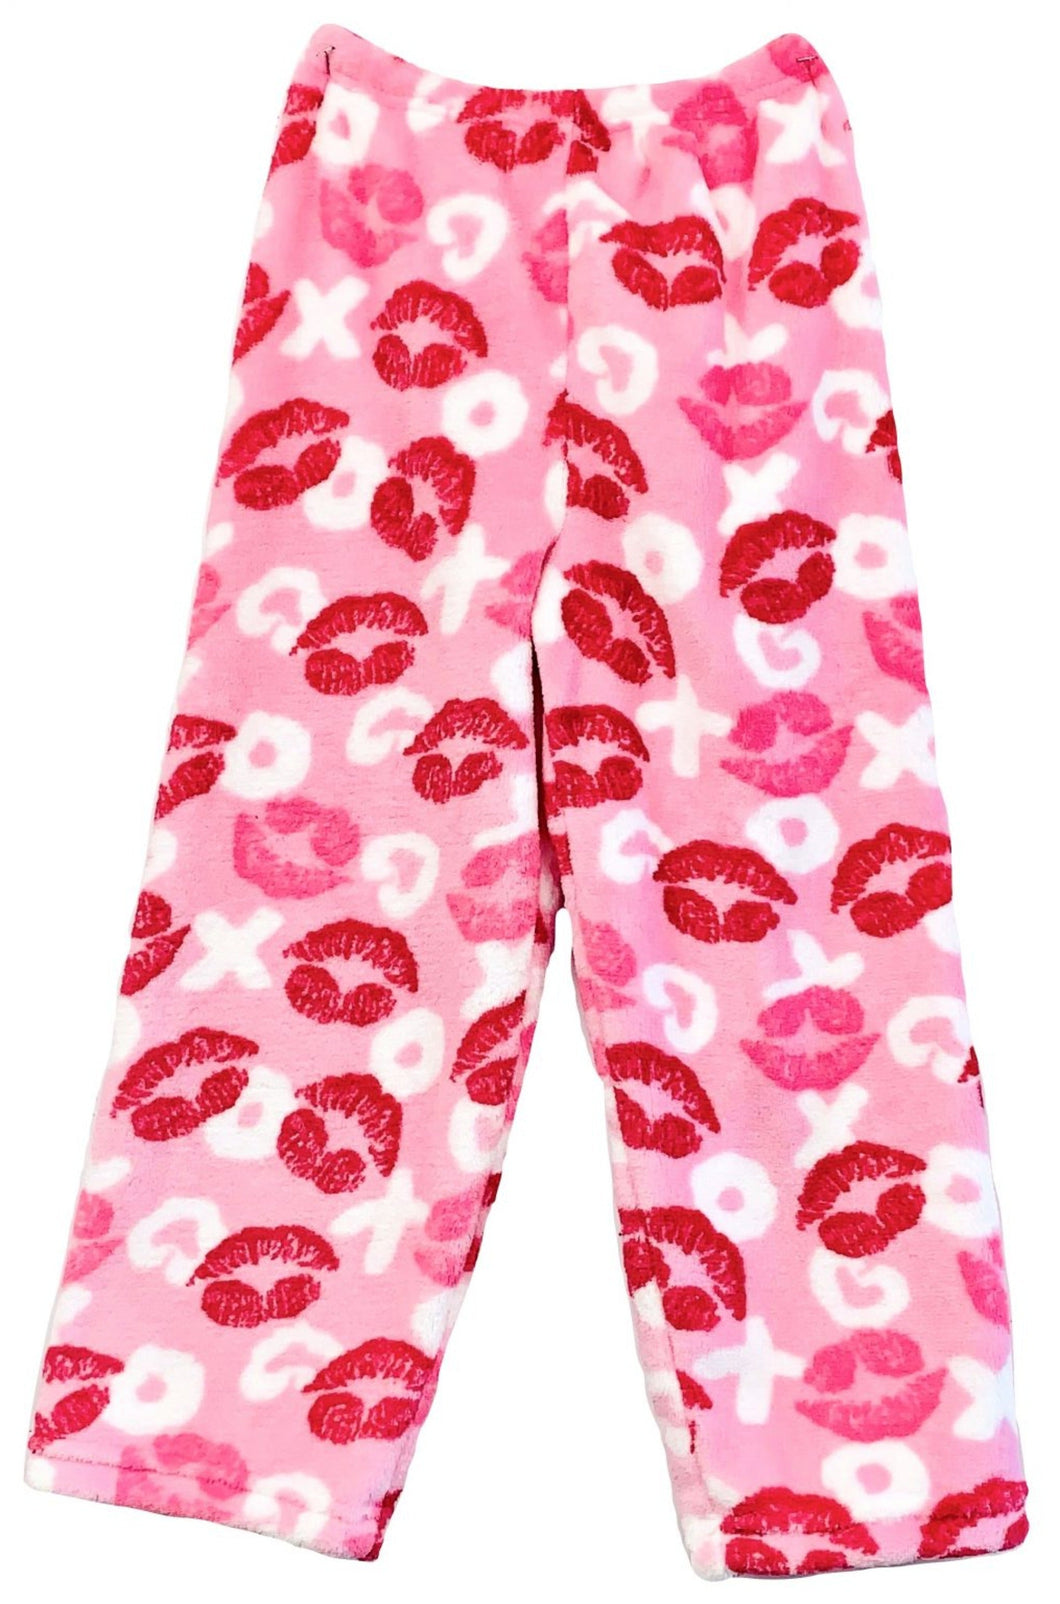 Girls Love & Kisses Print Plush Lounge Pant